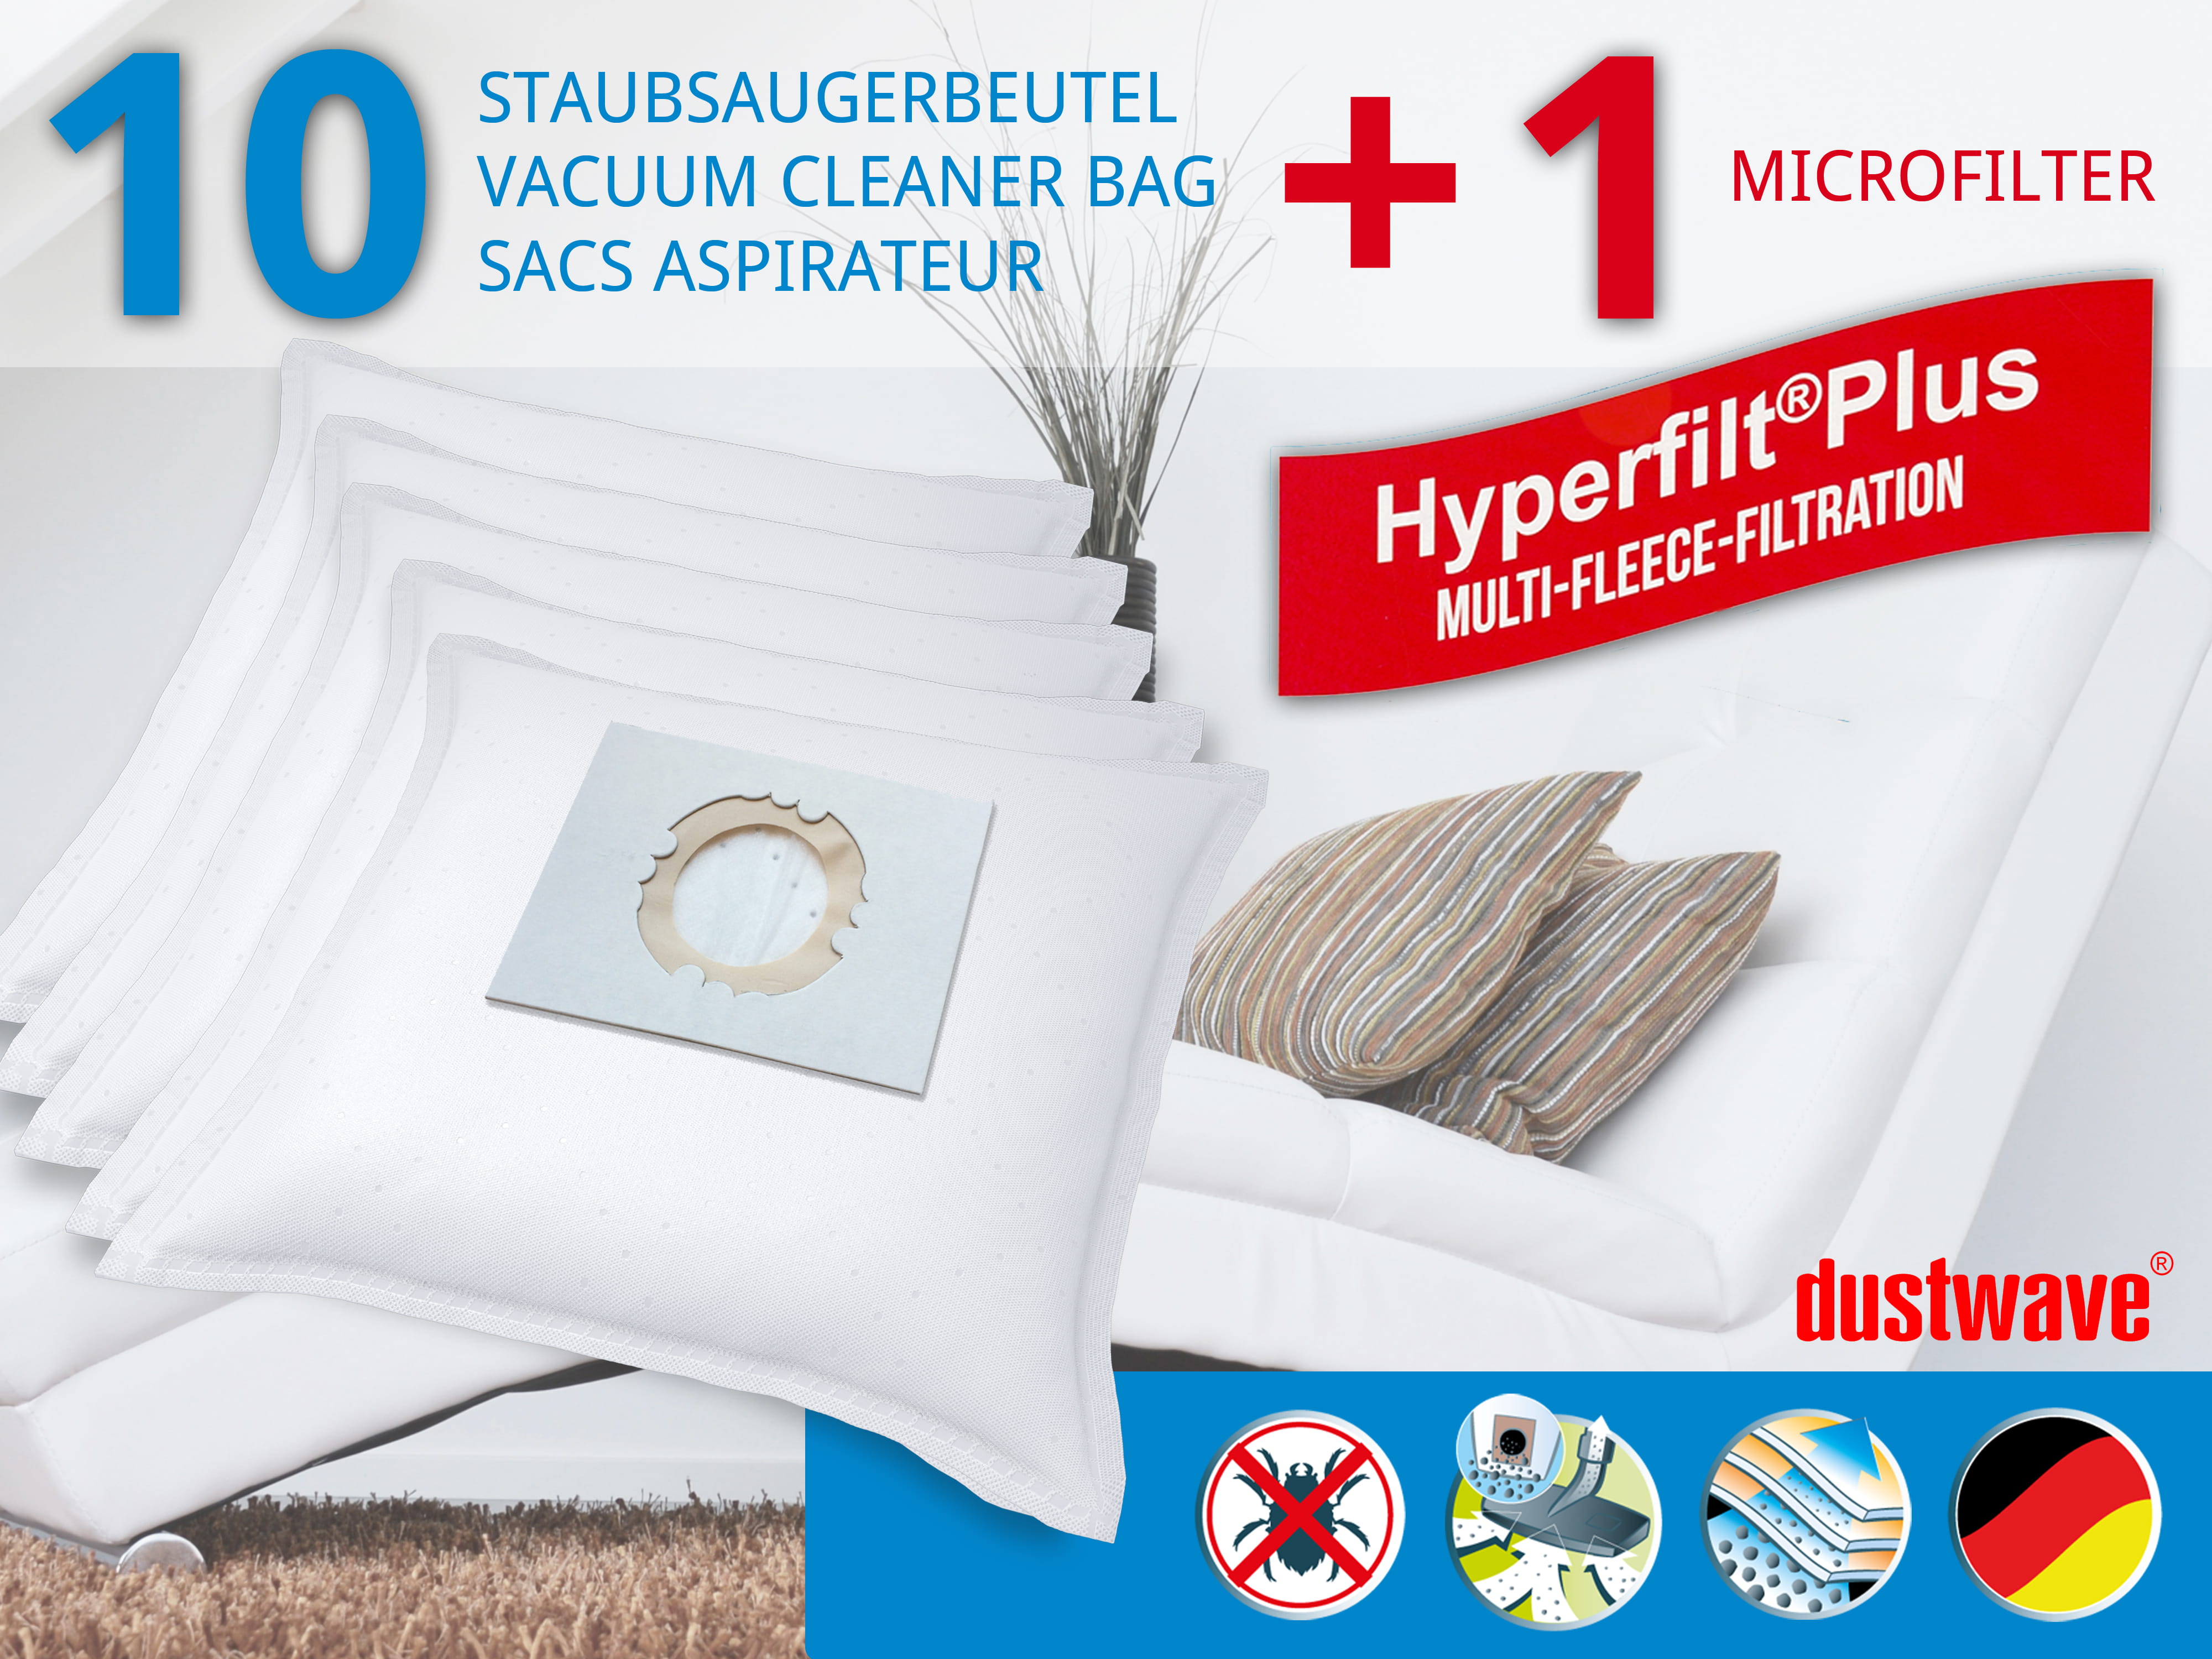 Dustwave® 10 Staubsaugerbeutel für Hoover BD SX2056 021 - hocheffizient, mehrlagiges Mikrovlies mit Hygieneverschluss - Made in Germany